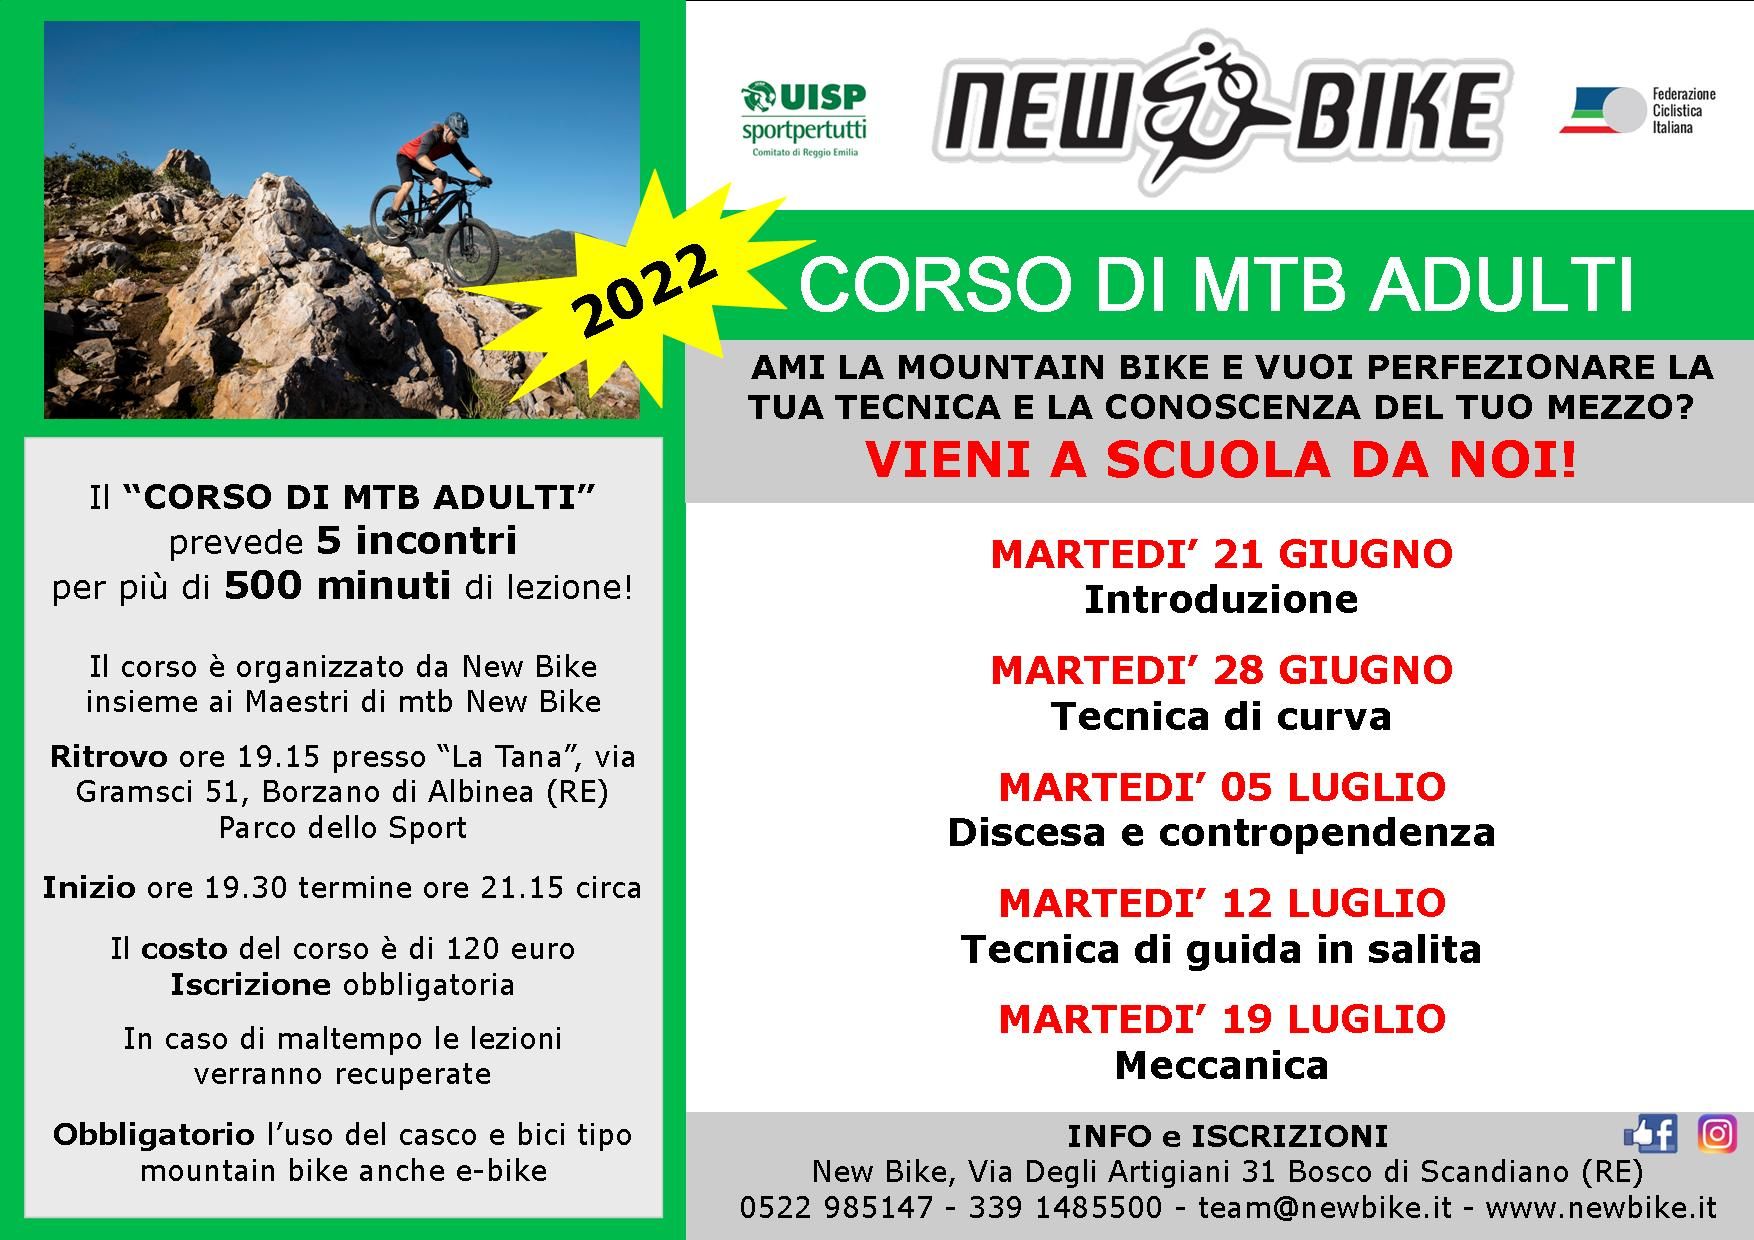 New Bike organizza un corso mtb adulti giugno luglio 2022